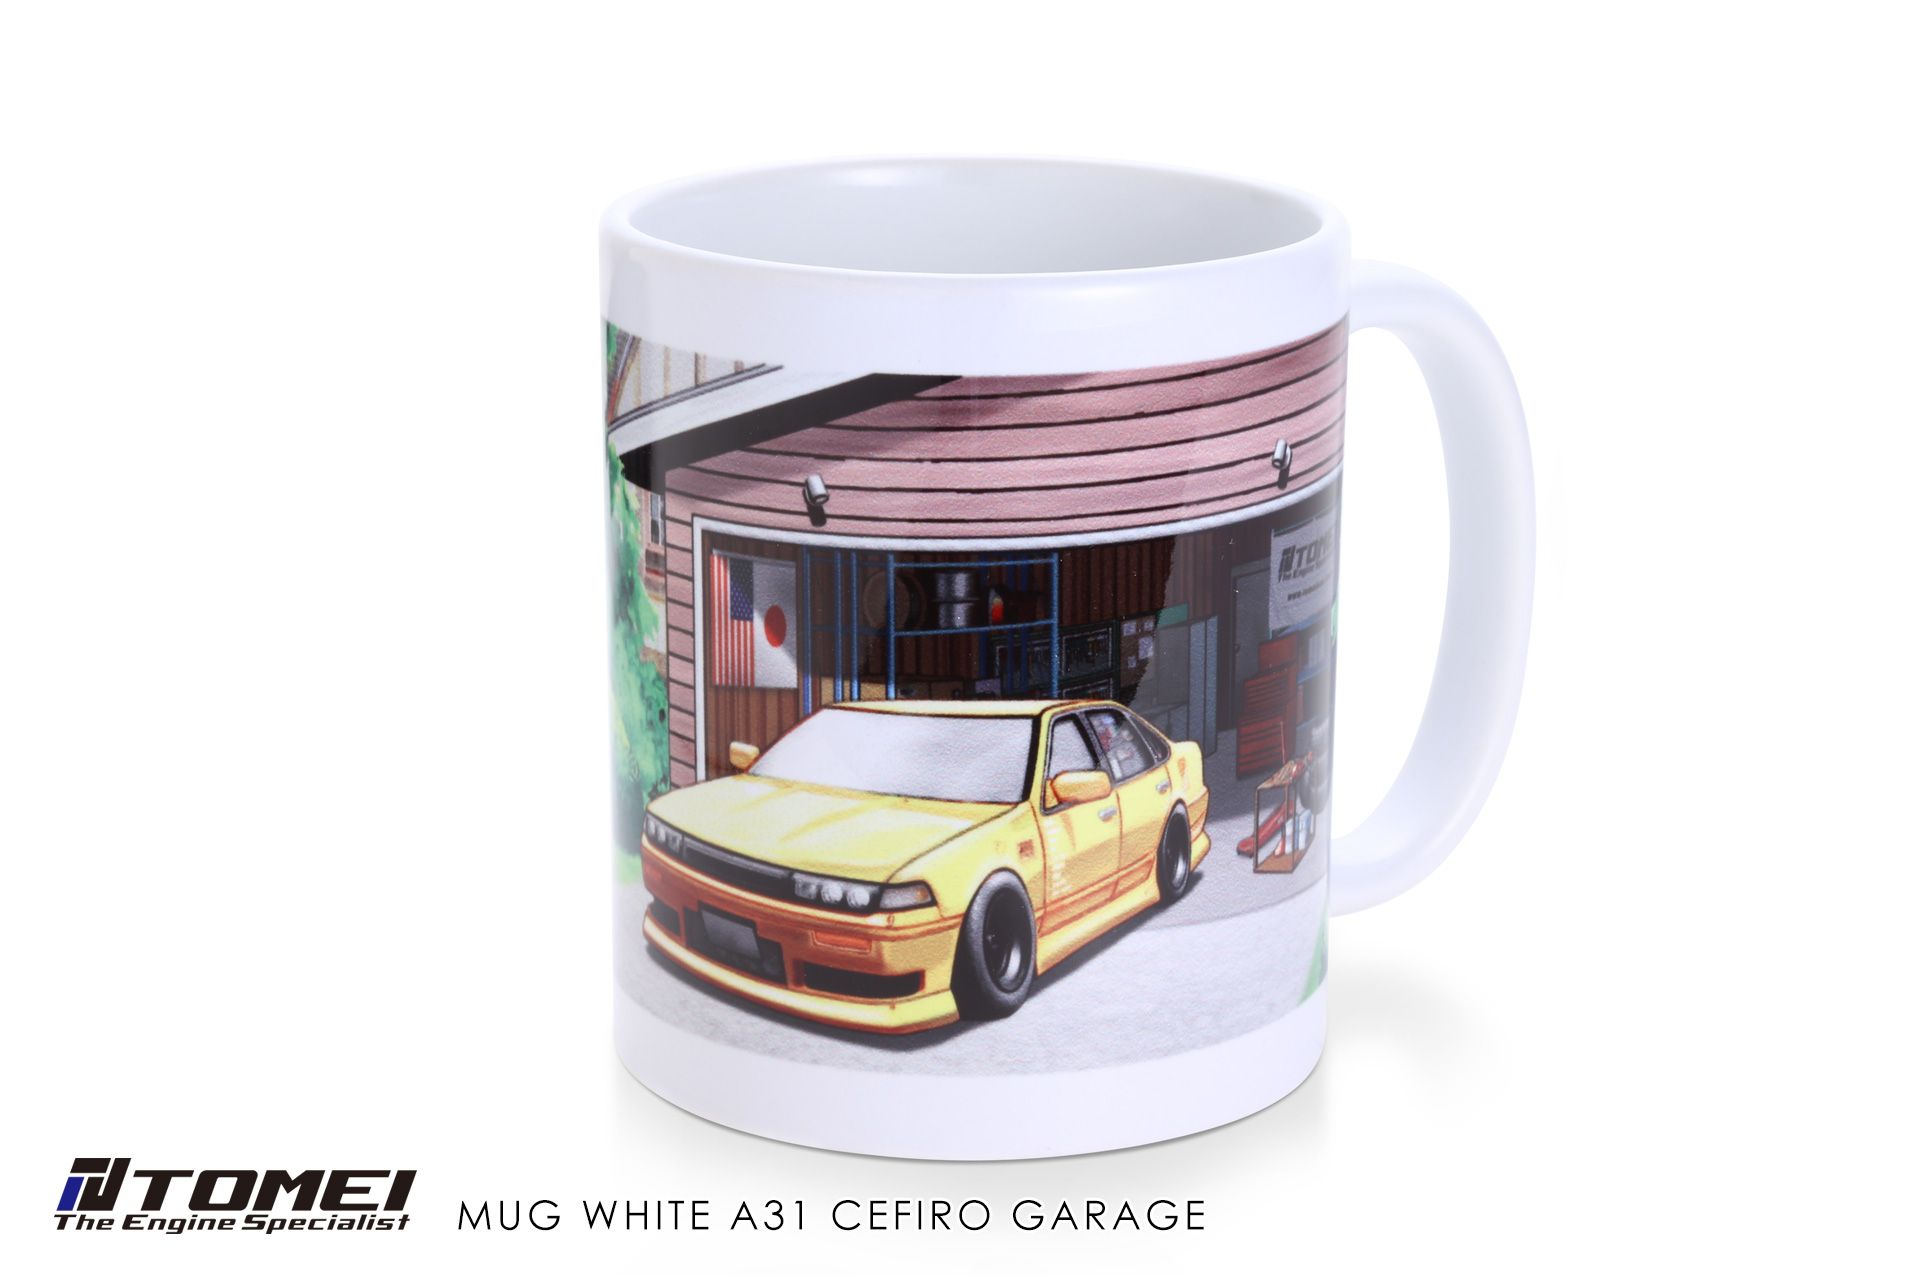 Tomei Mug White A31 Cefiro Garage